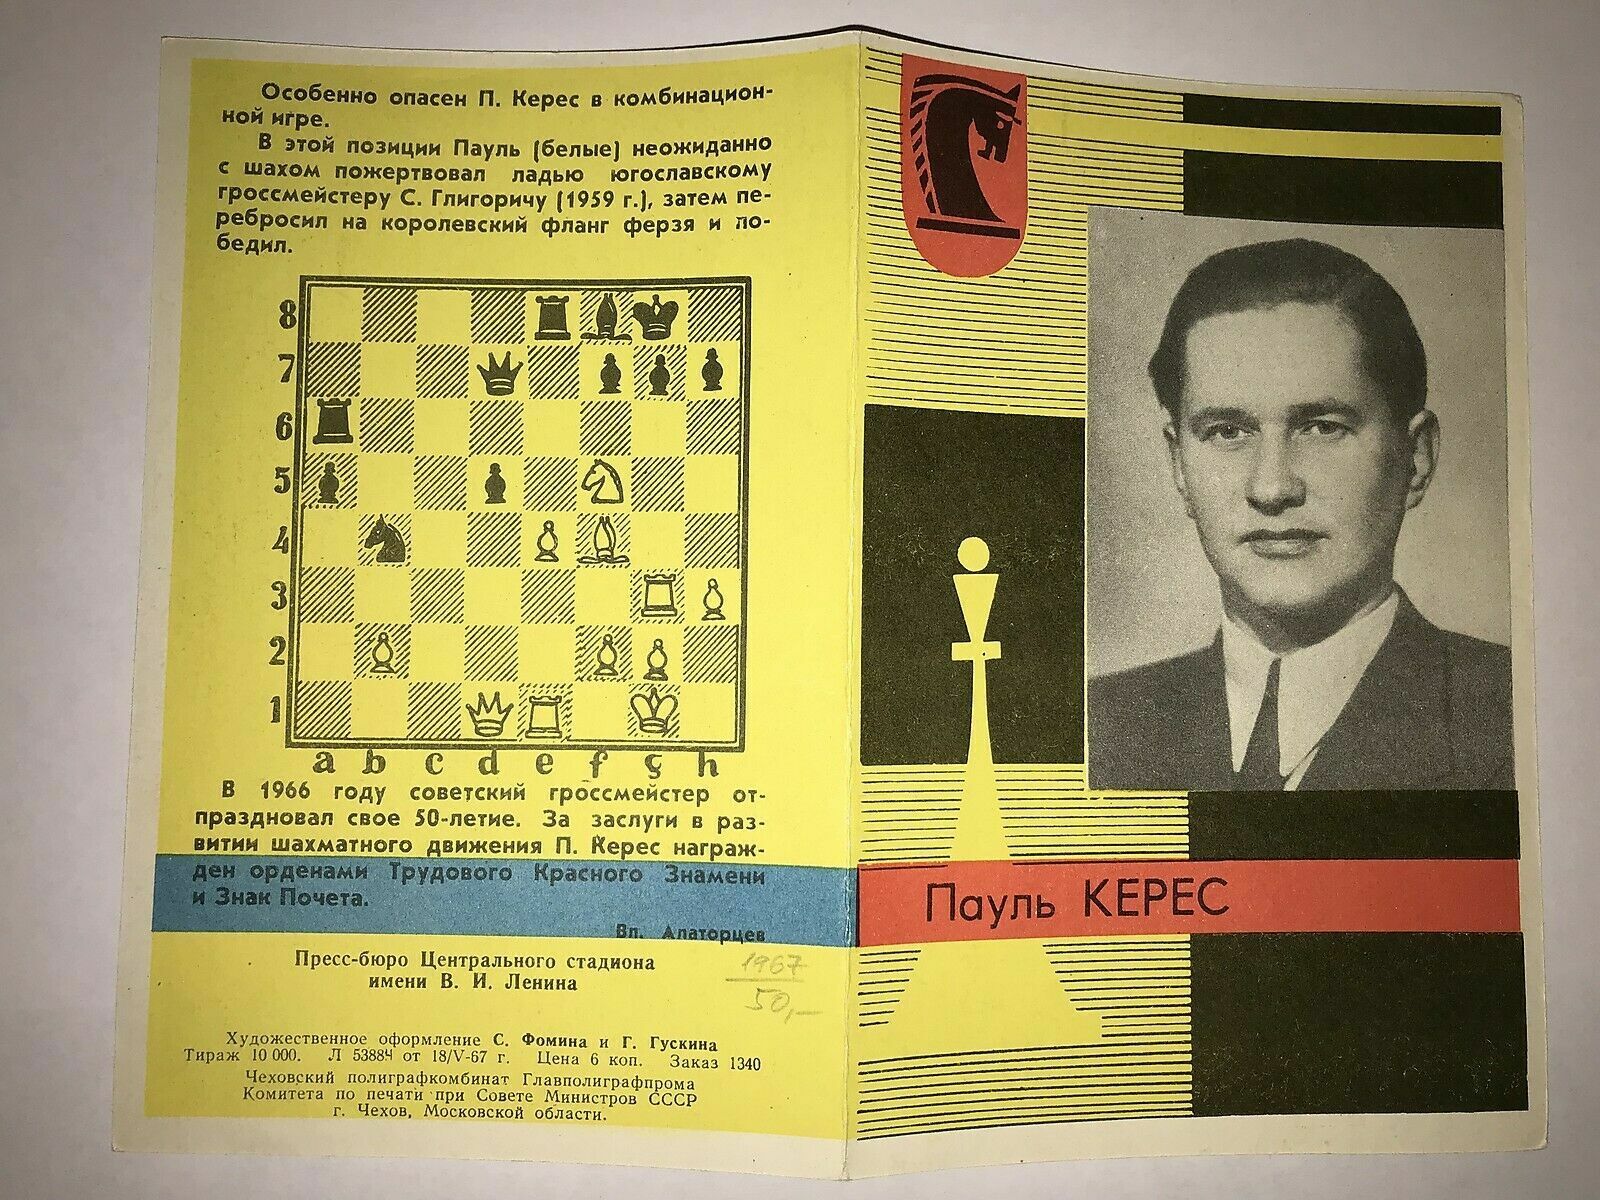 11719.Soviet Chess Booklet: Paul Keres. 1967